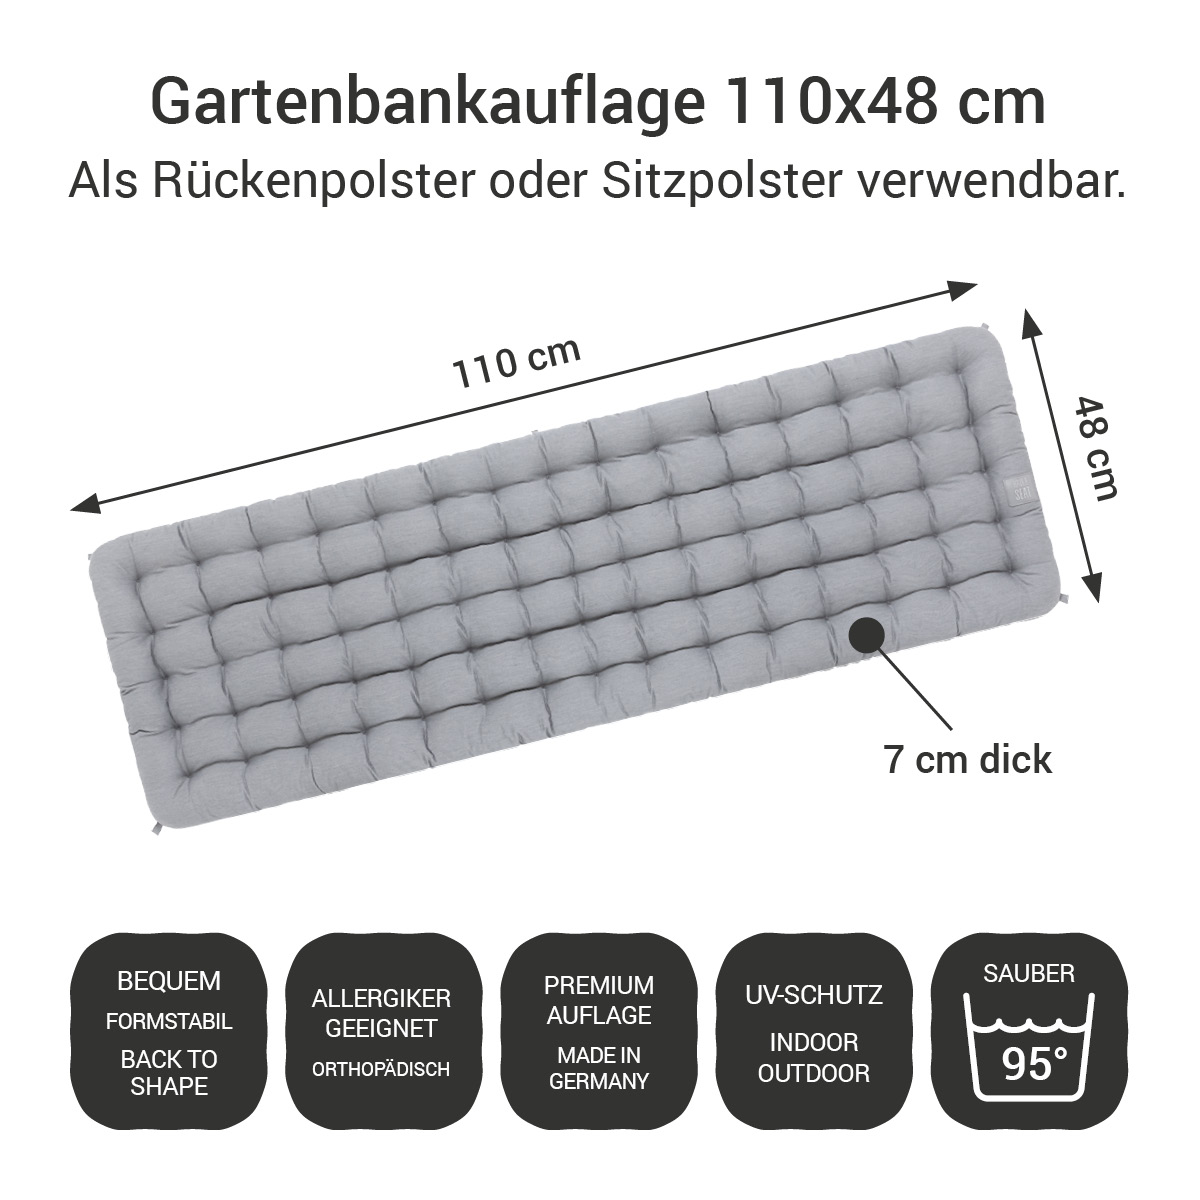 Gartenbankauflage hellgrau | 110x48 cm / 110 x 50 cm | bequem & orthopädisch, komplett im Ganzen waschbar bis 95°C, wetterfest, Made in Germany